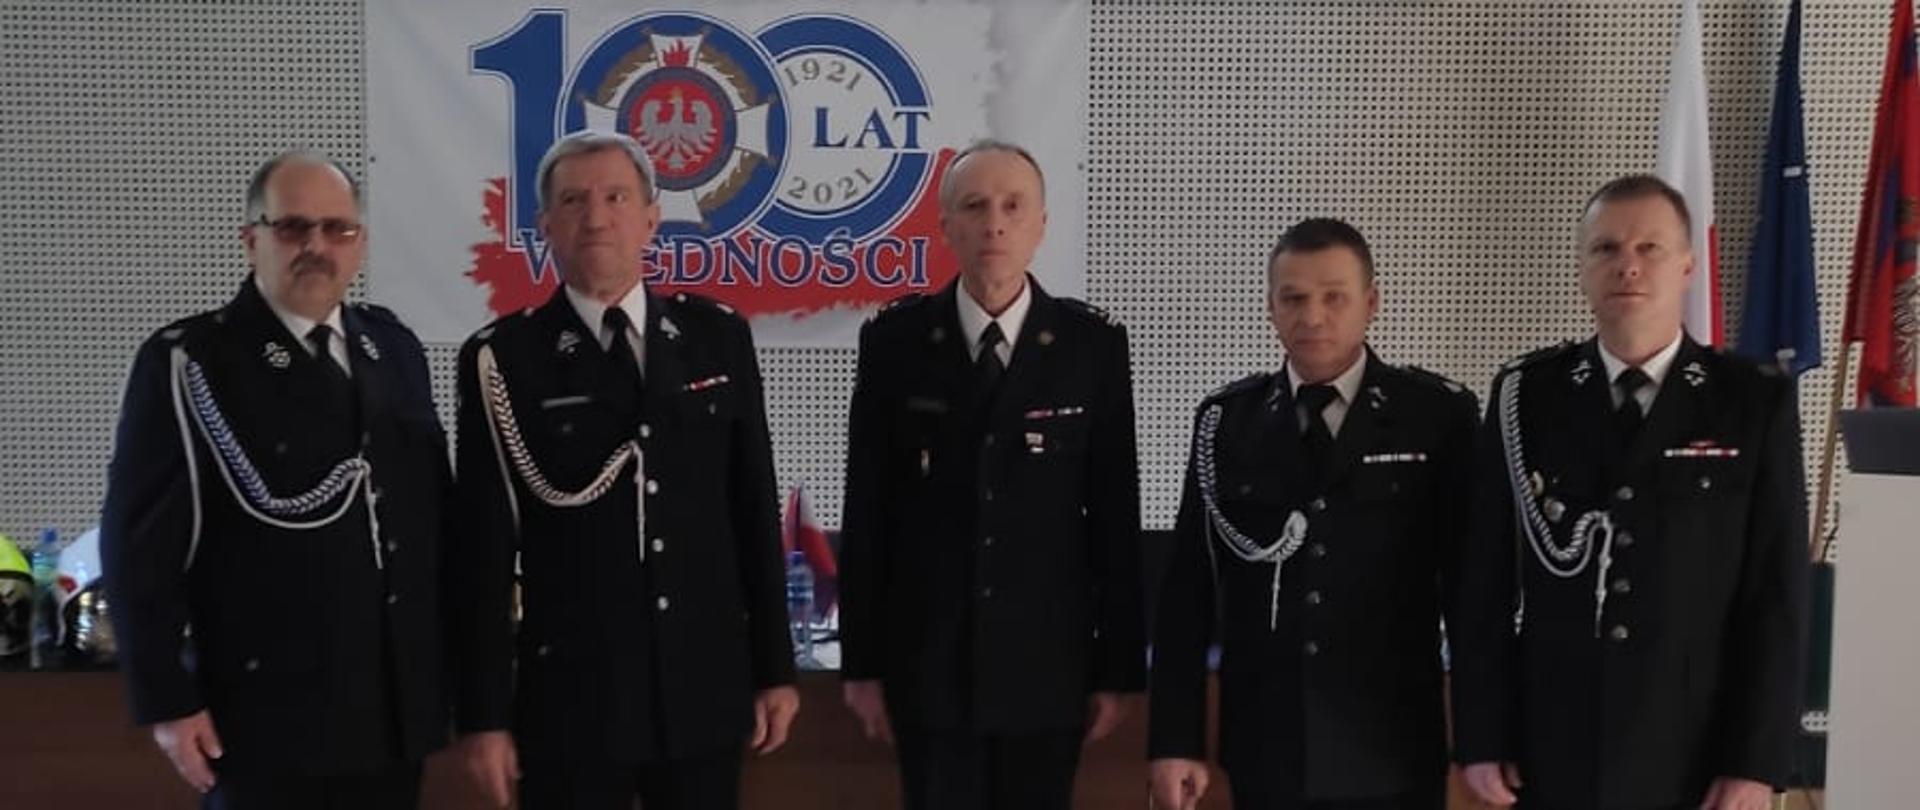 Zdjęcie przedstawia 5 mężczyzn podczas V Zjazd Oddziału Wojewódzkiego Ochotniczych Straży Pożarnych RP województwa zachodniopomorskiego. Znajdują się oni na sali.